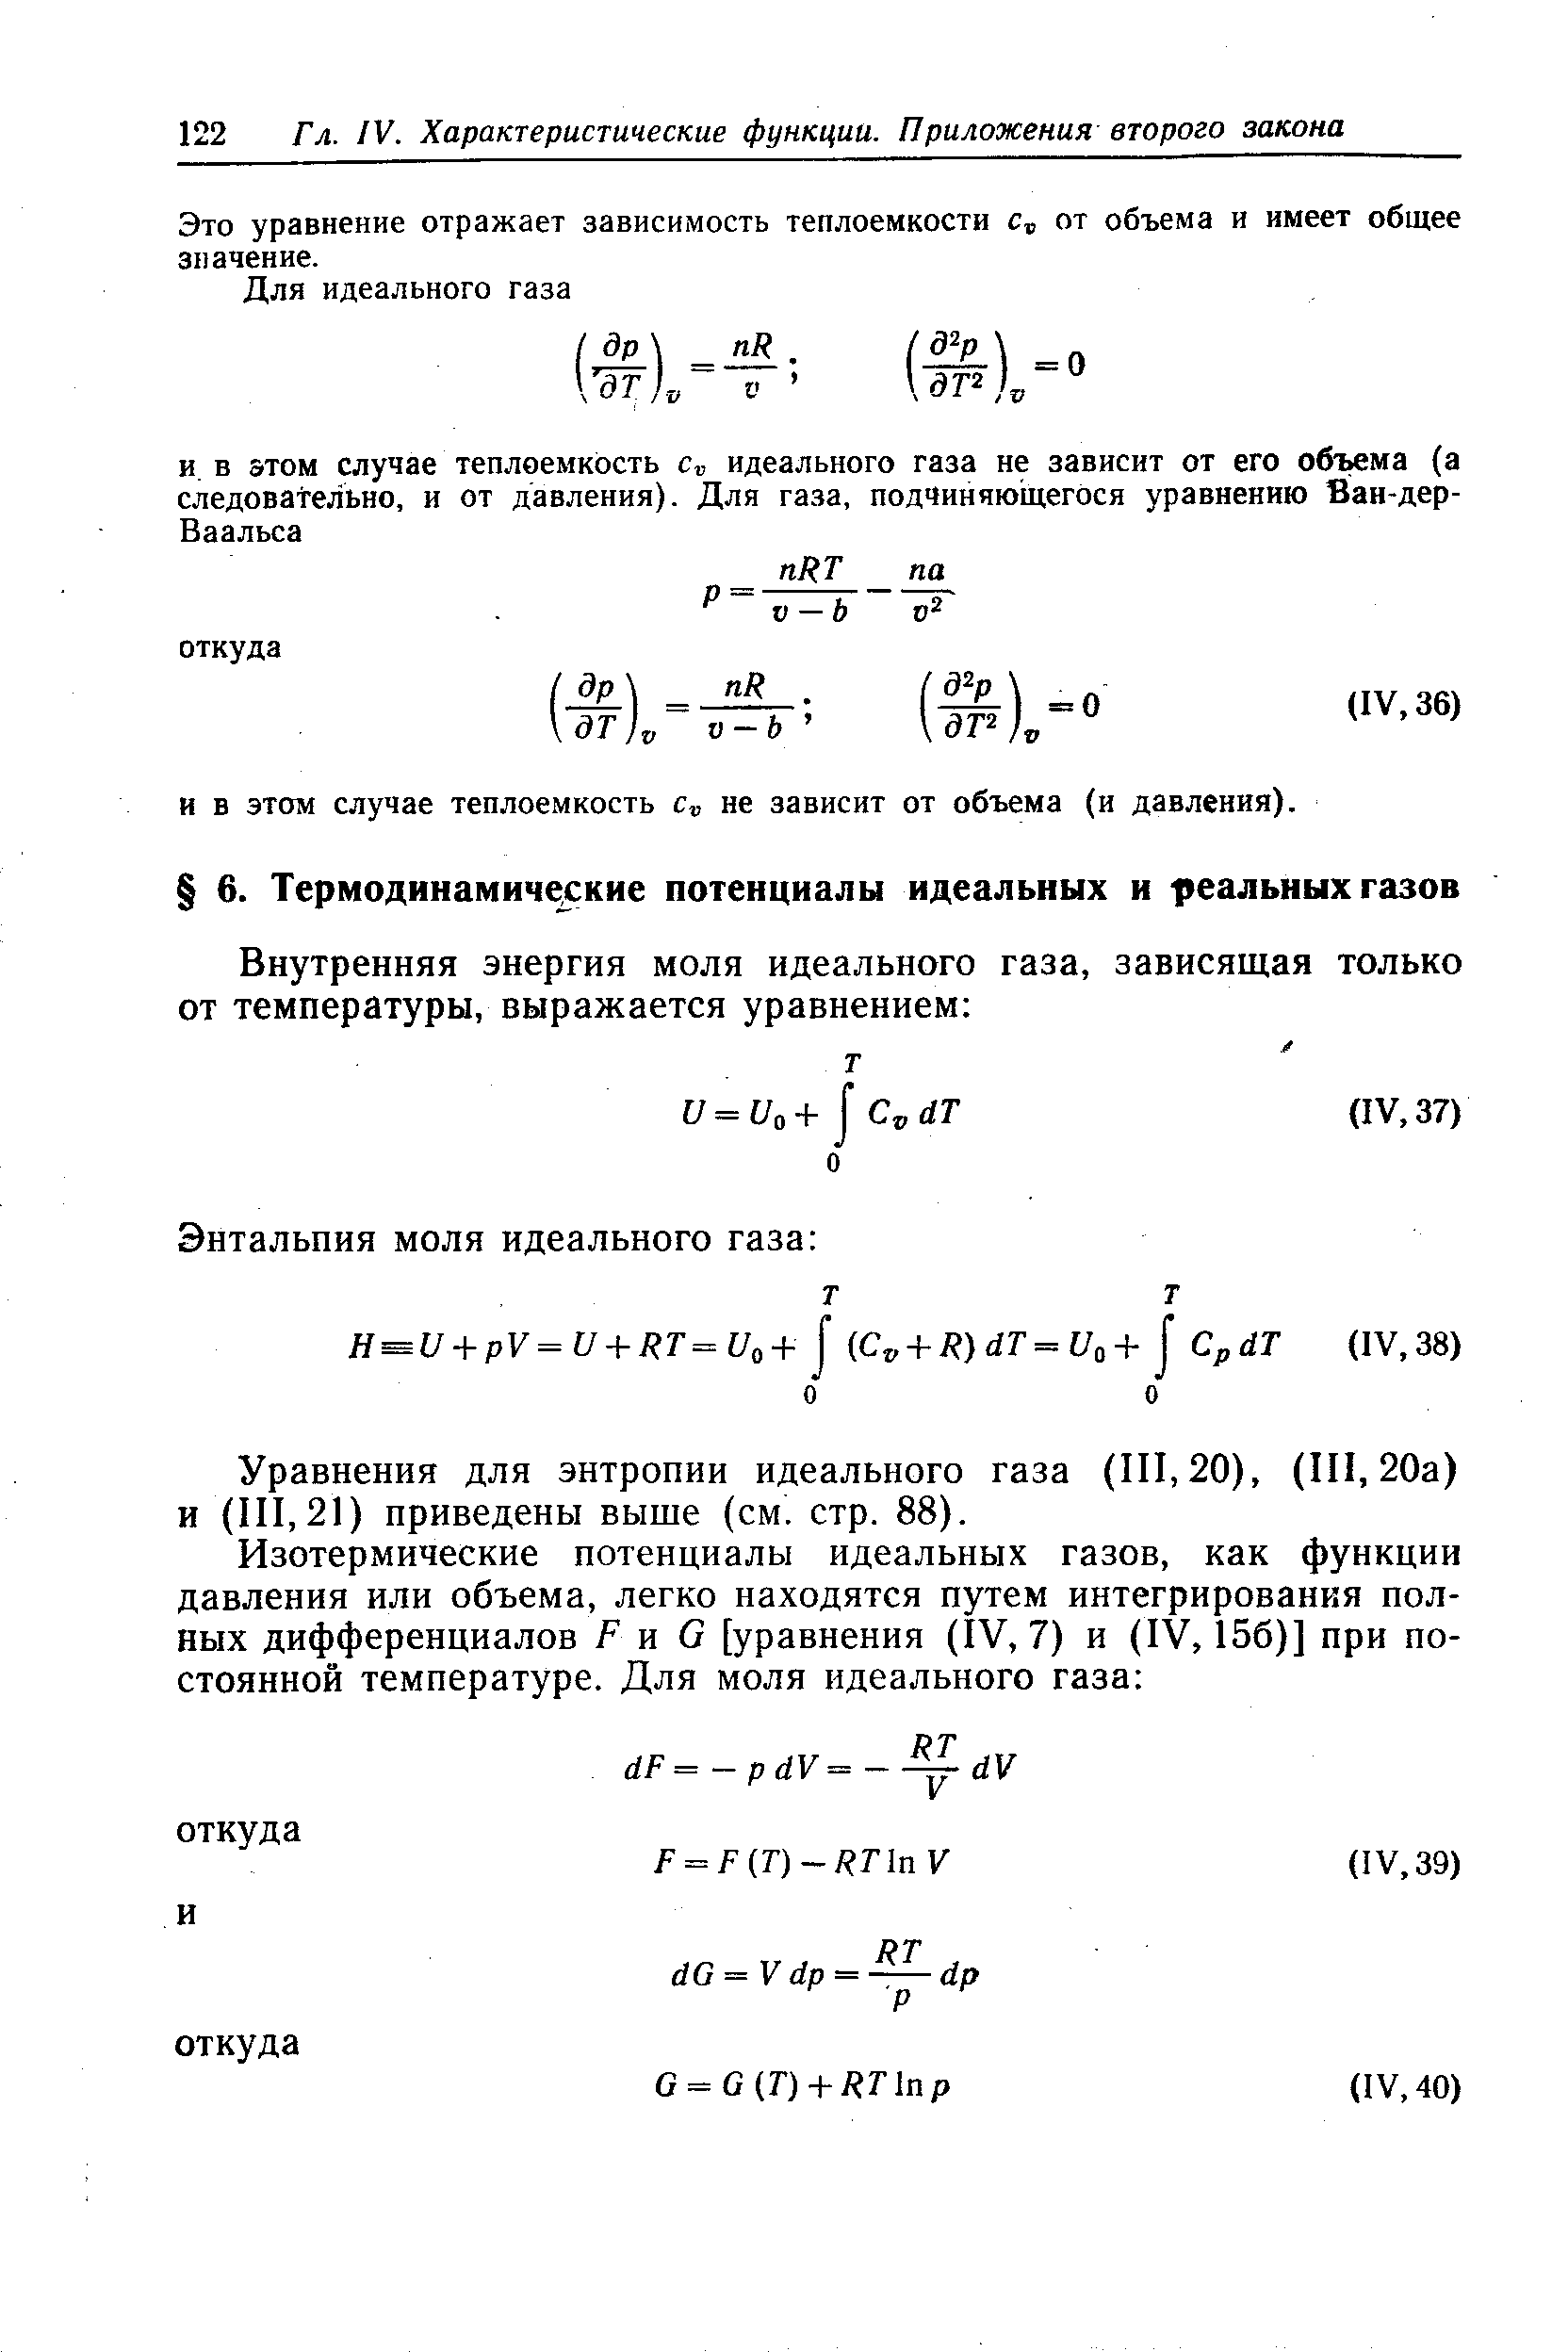 Уравнения для энтропии идеального газа (111,20), (111,20а) и (111,21) приведены выше (см. стр. 88).